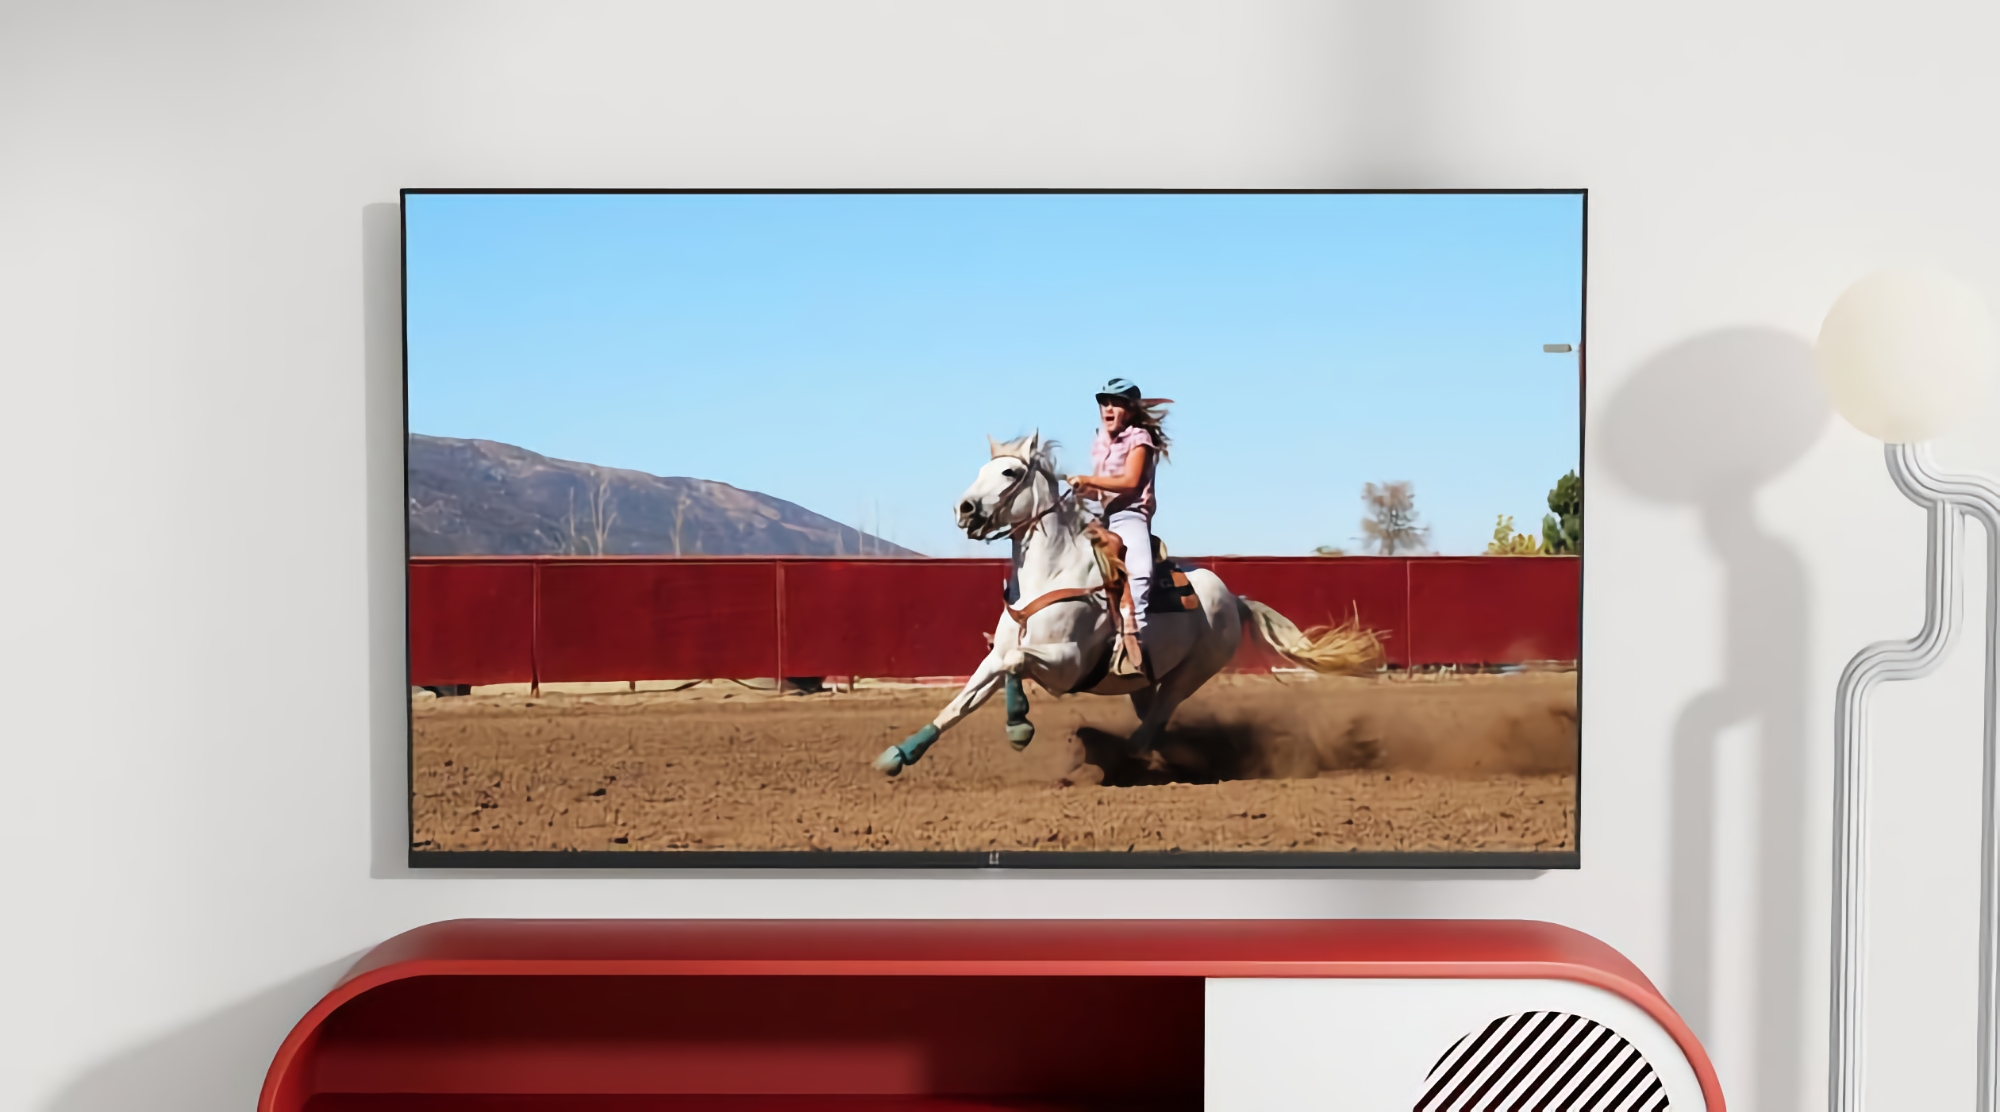 Insider : OnePlus prépare un nouveau téléviseur intelligent de 55 pouces avec écran LED